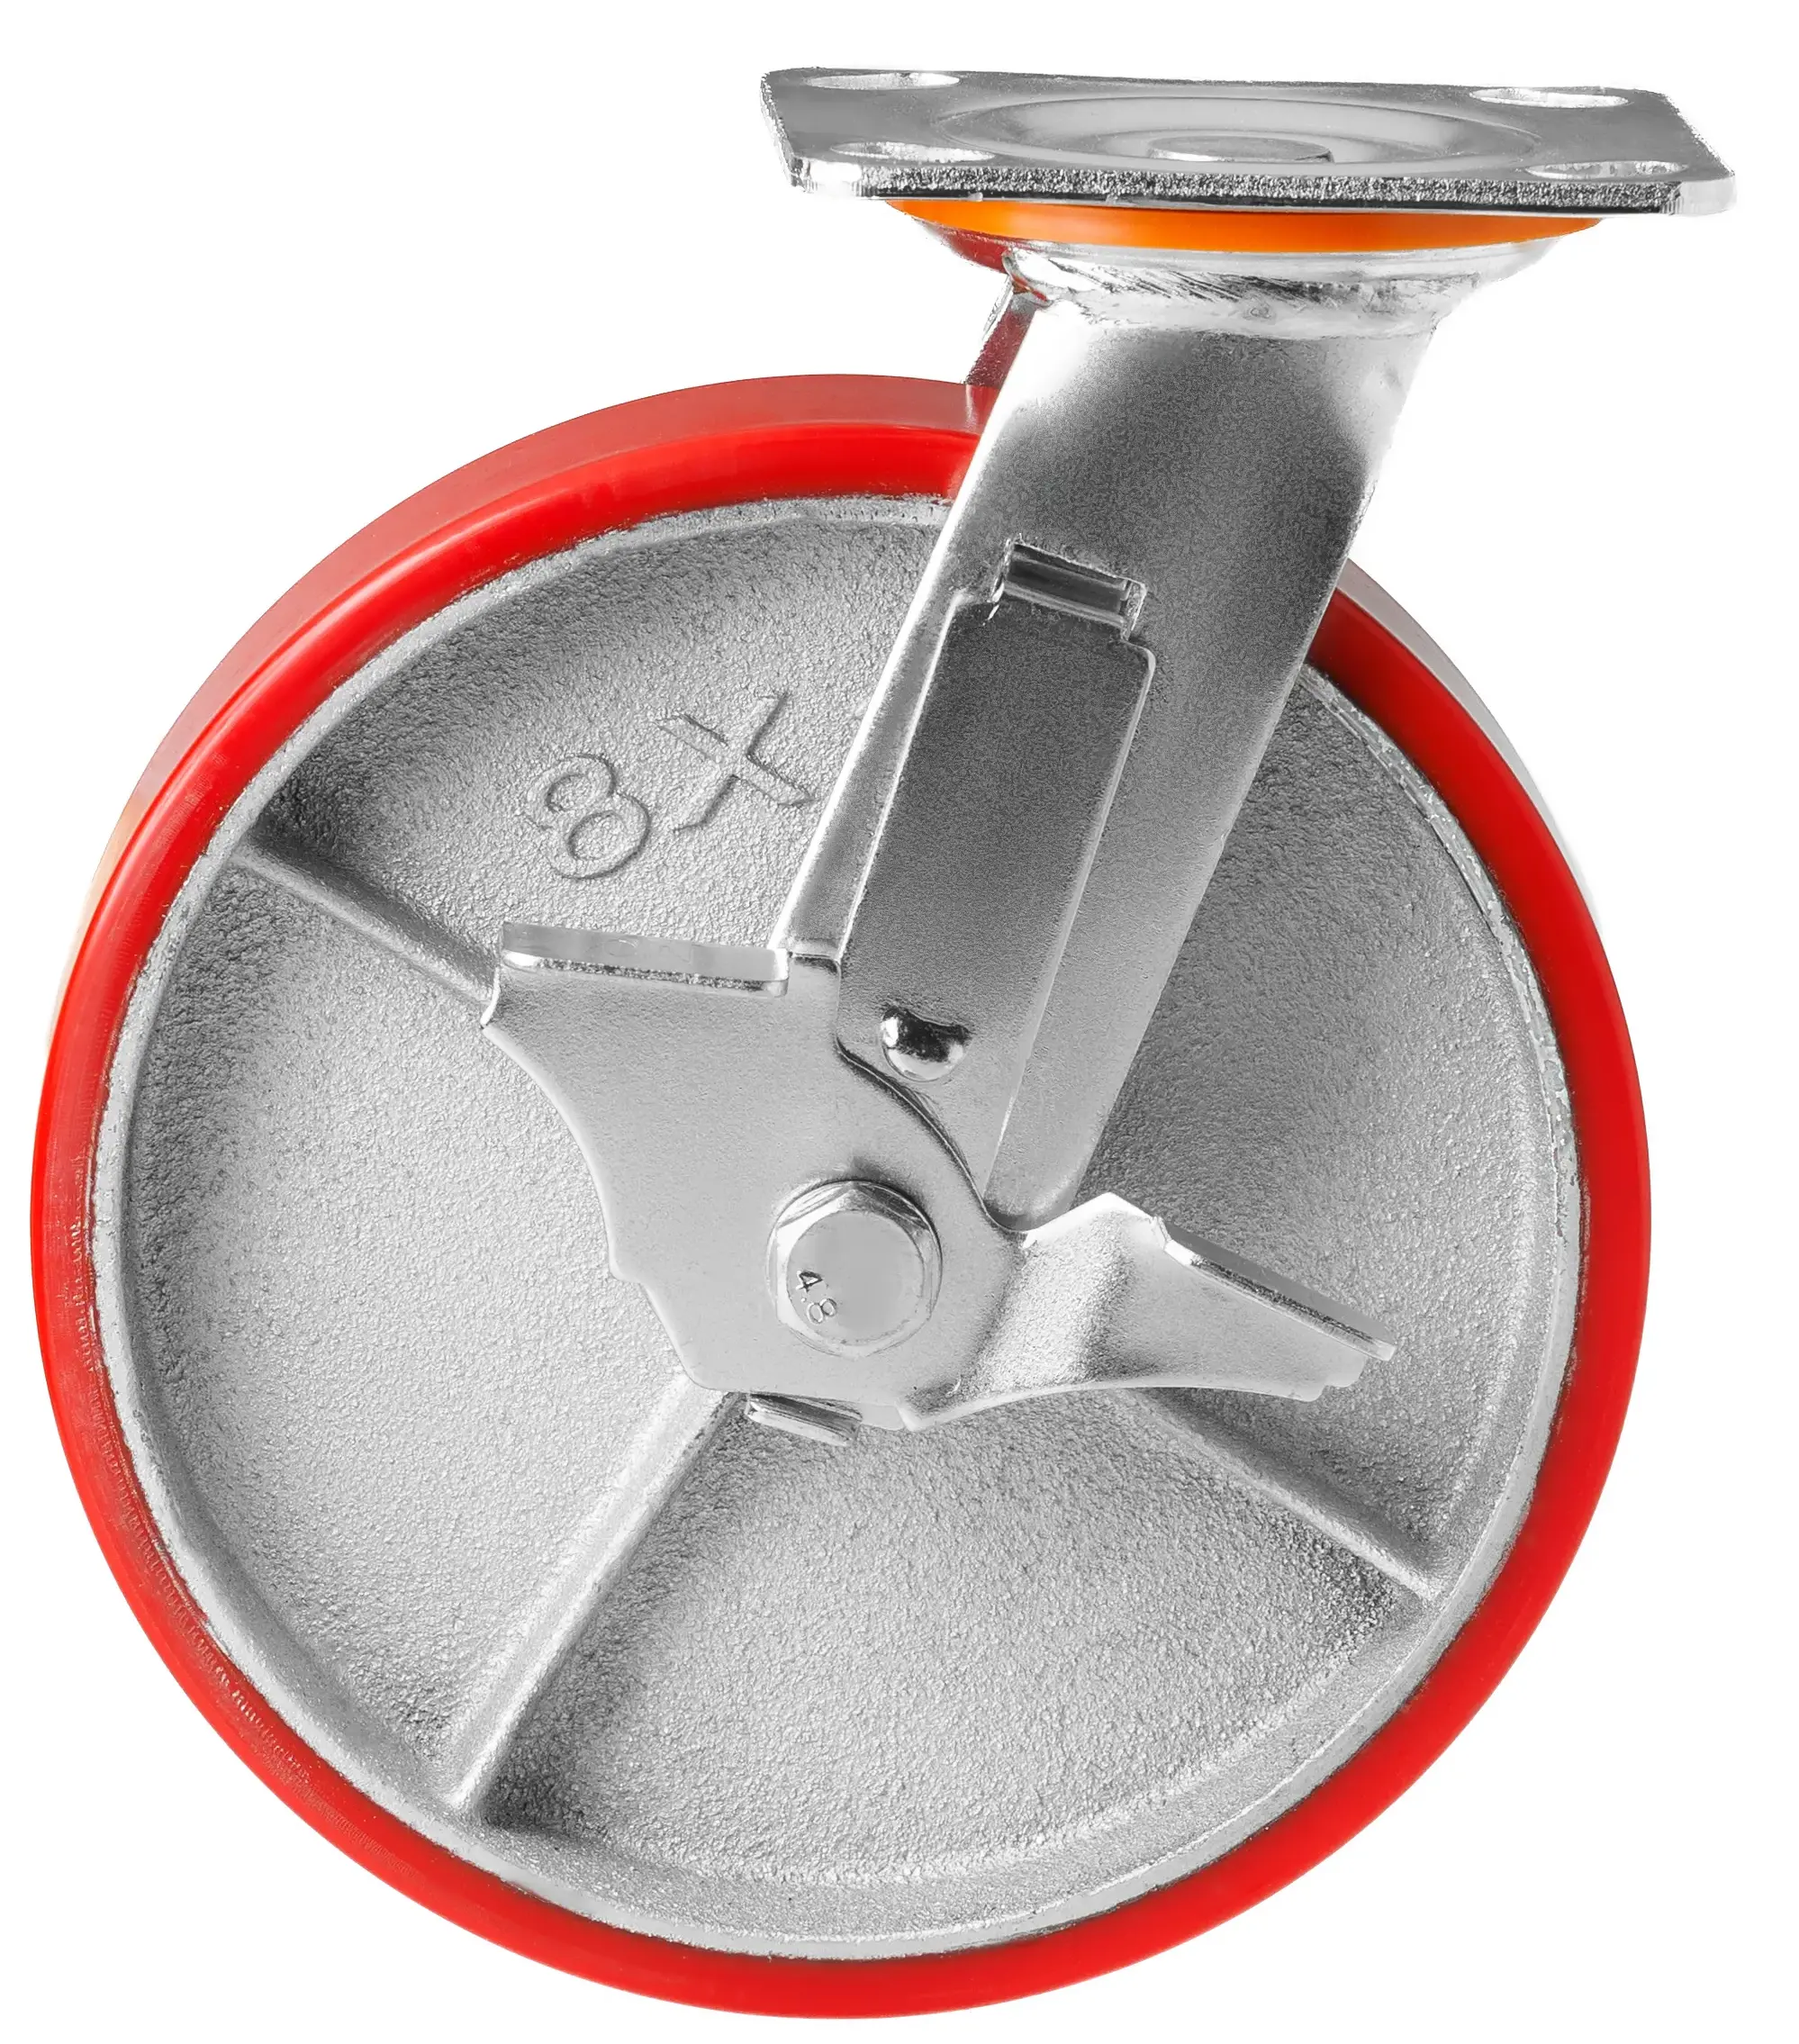 Большегрузное полиуретановое колесо 200 мм (поворотное, площадка, тормоз, роликоподшипник) - SCPB 80